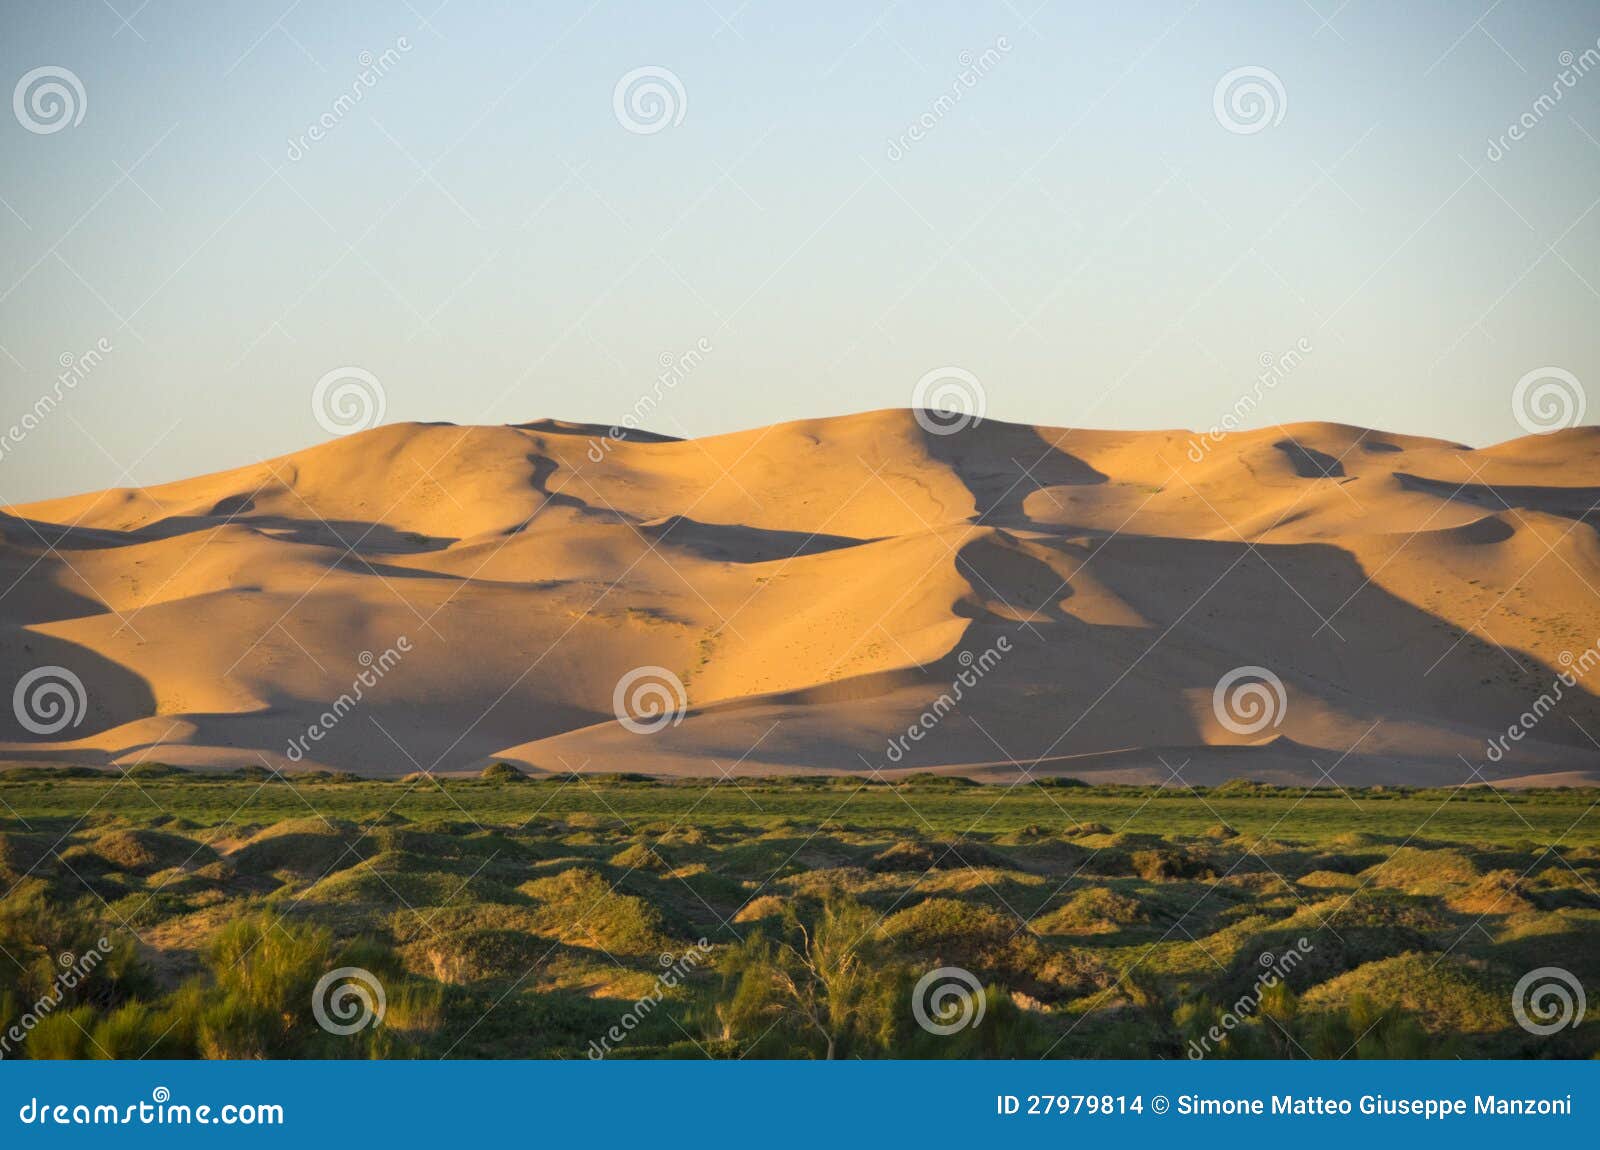 the goby desert, mongolia